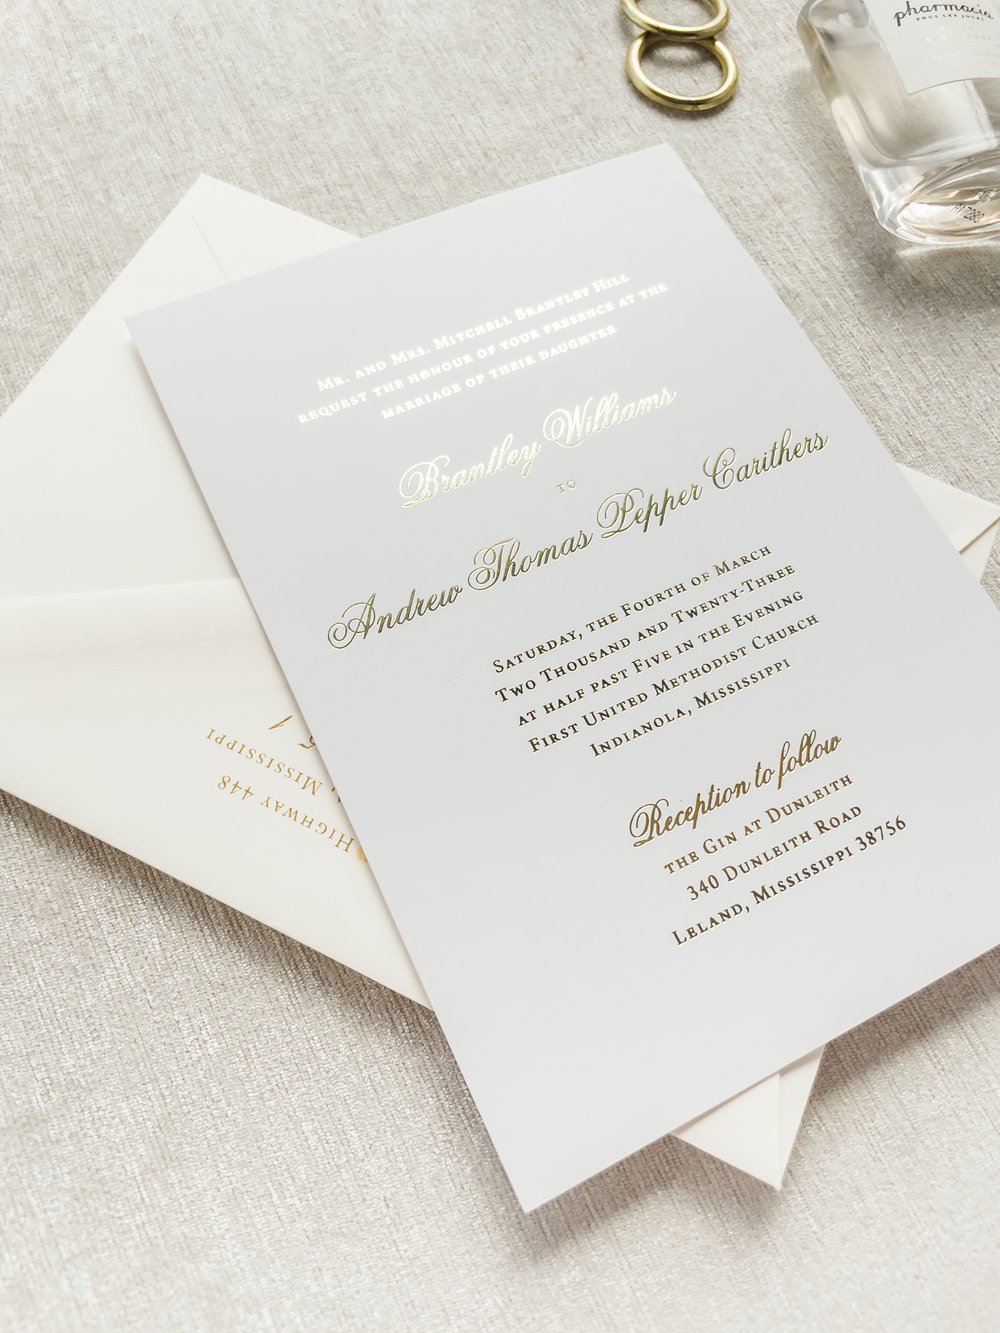 https://images.squarespace-cdn.com/content/v1/5a0dc23e9f07f57da4455360/1687637755379-74WJ5HR28WBYJ3A6U5GM/Anthology+Print+Wedding+Invitations+-+Gatefolding+wedding+invitations+-+gold+foil+wedding+invites9.jpg?format=1000w